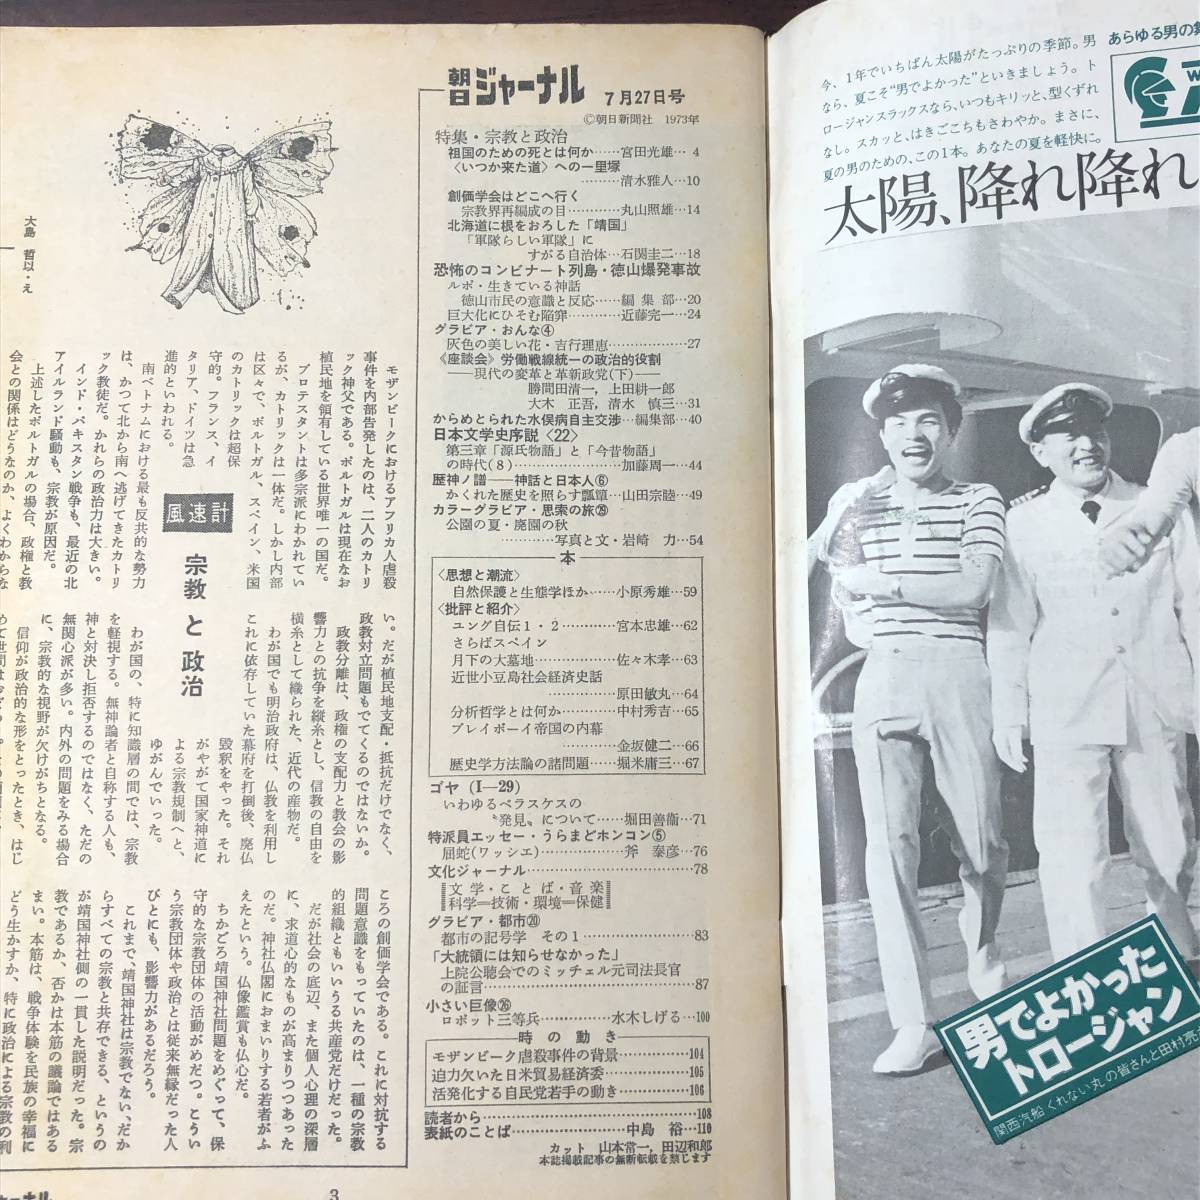 A01【ゆうメール送料無料】朝日ジャーナル 1973年7月27日号 VOL.15 NO.29の画像3